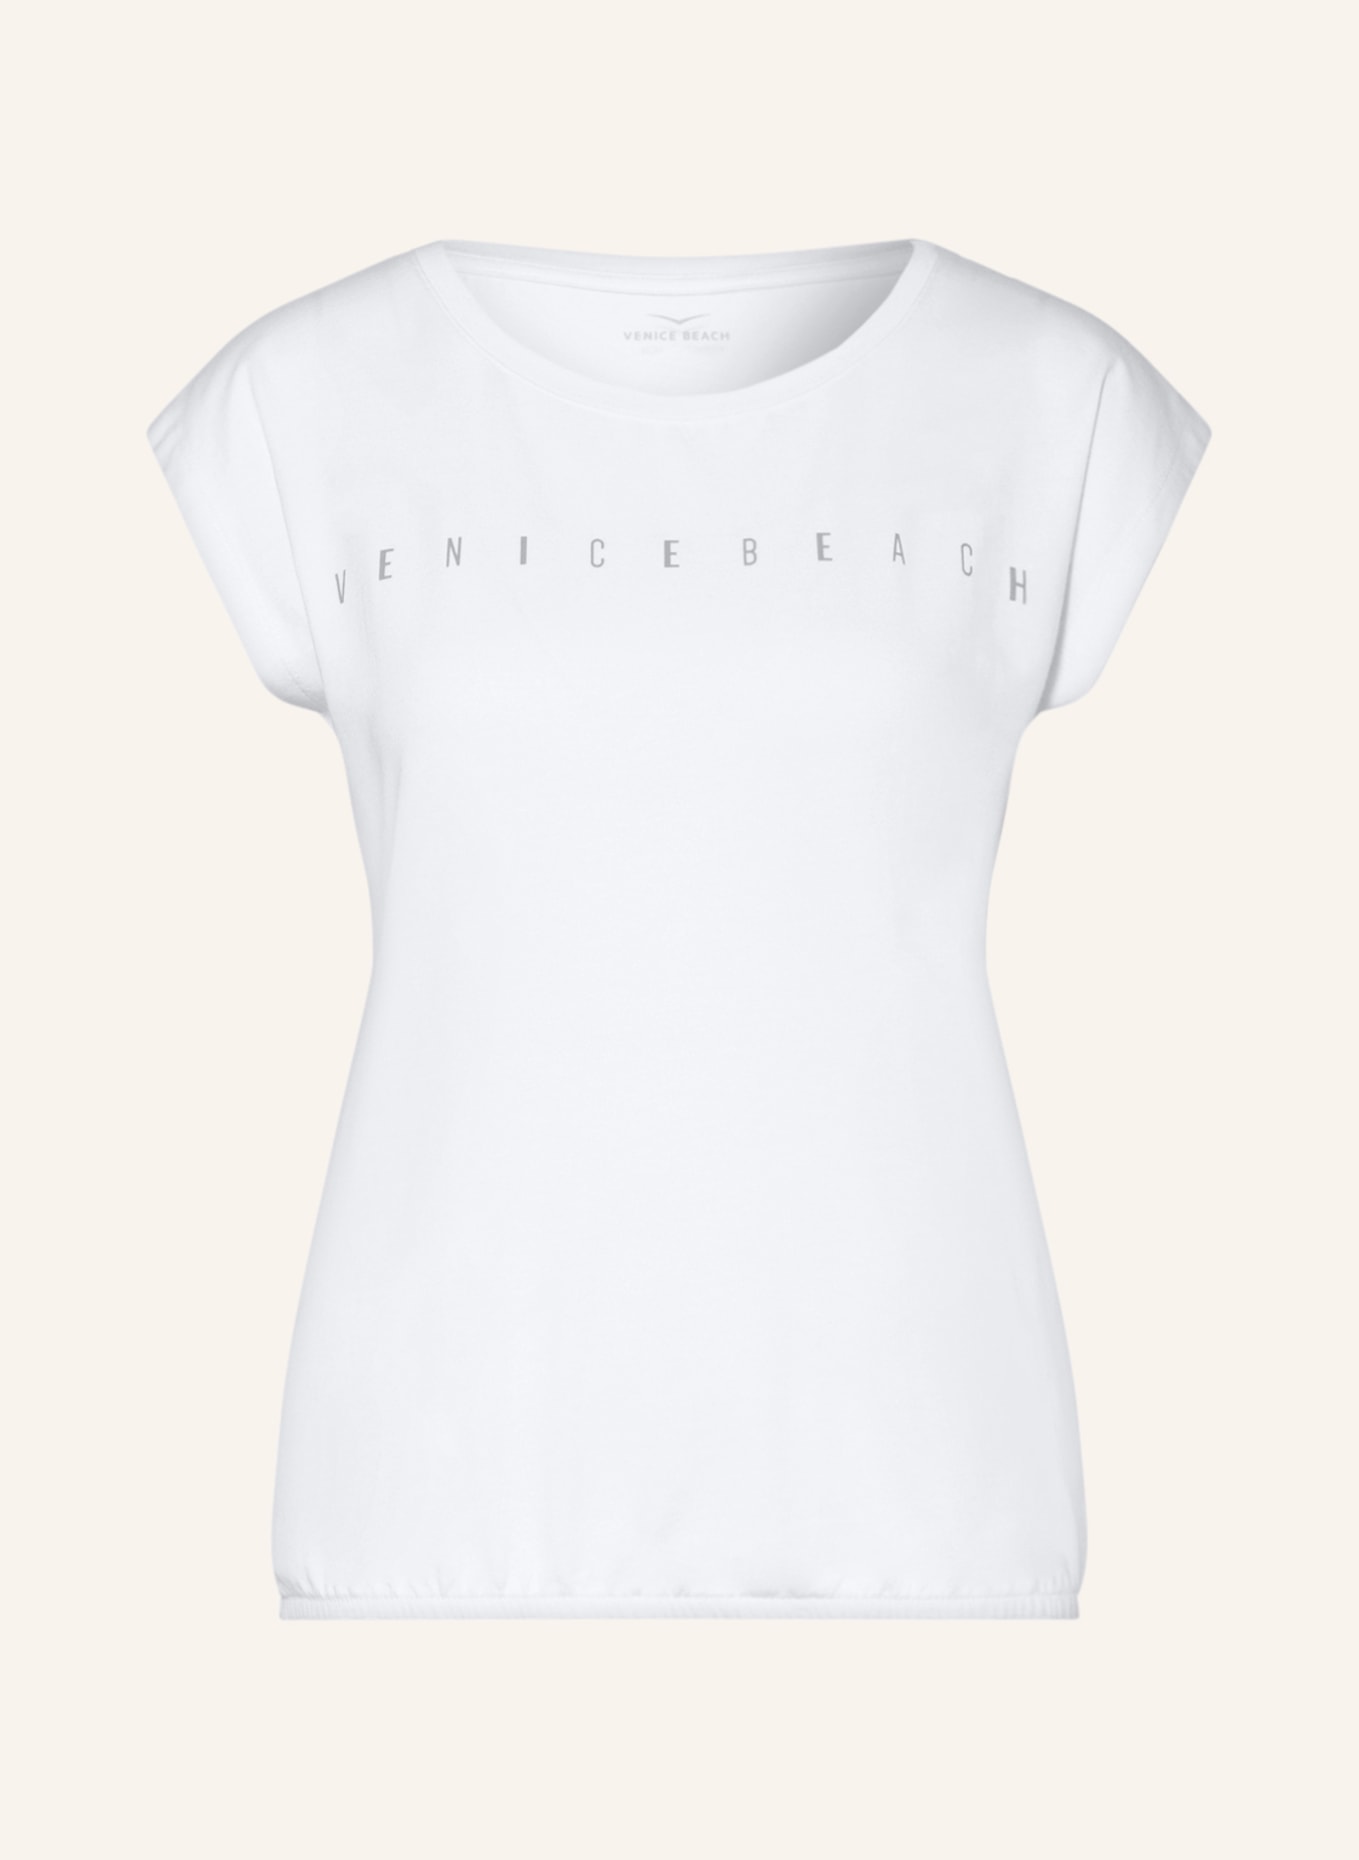 VENICE BEACH T-Shirt WONDER, Farbe: WEISS (Bild 1)